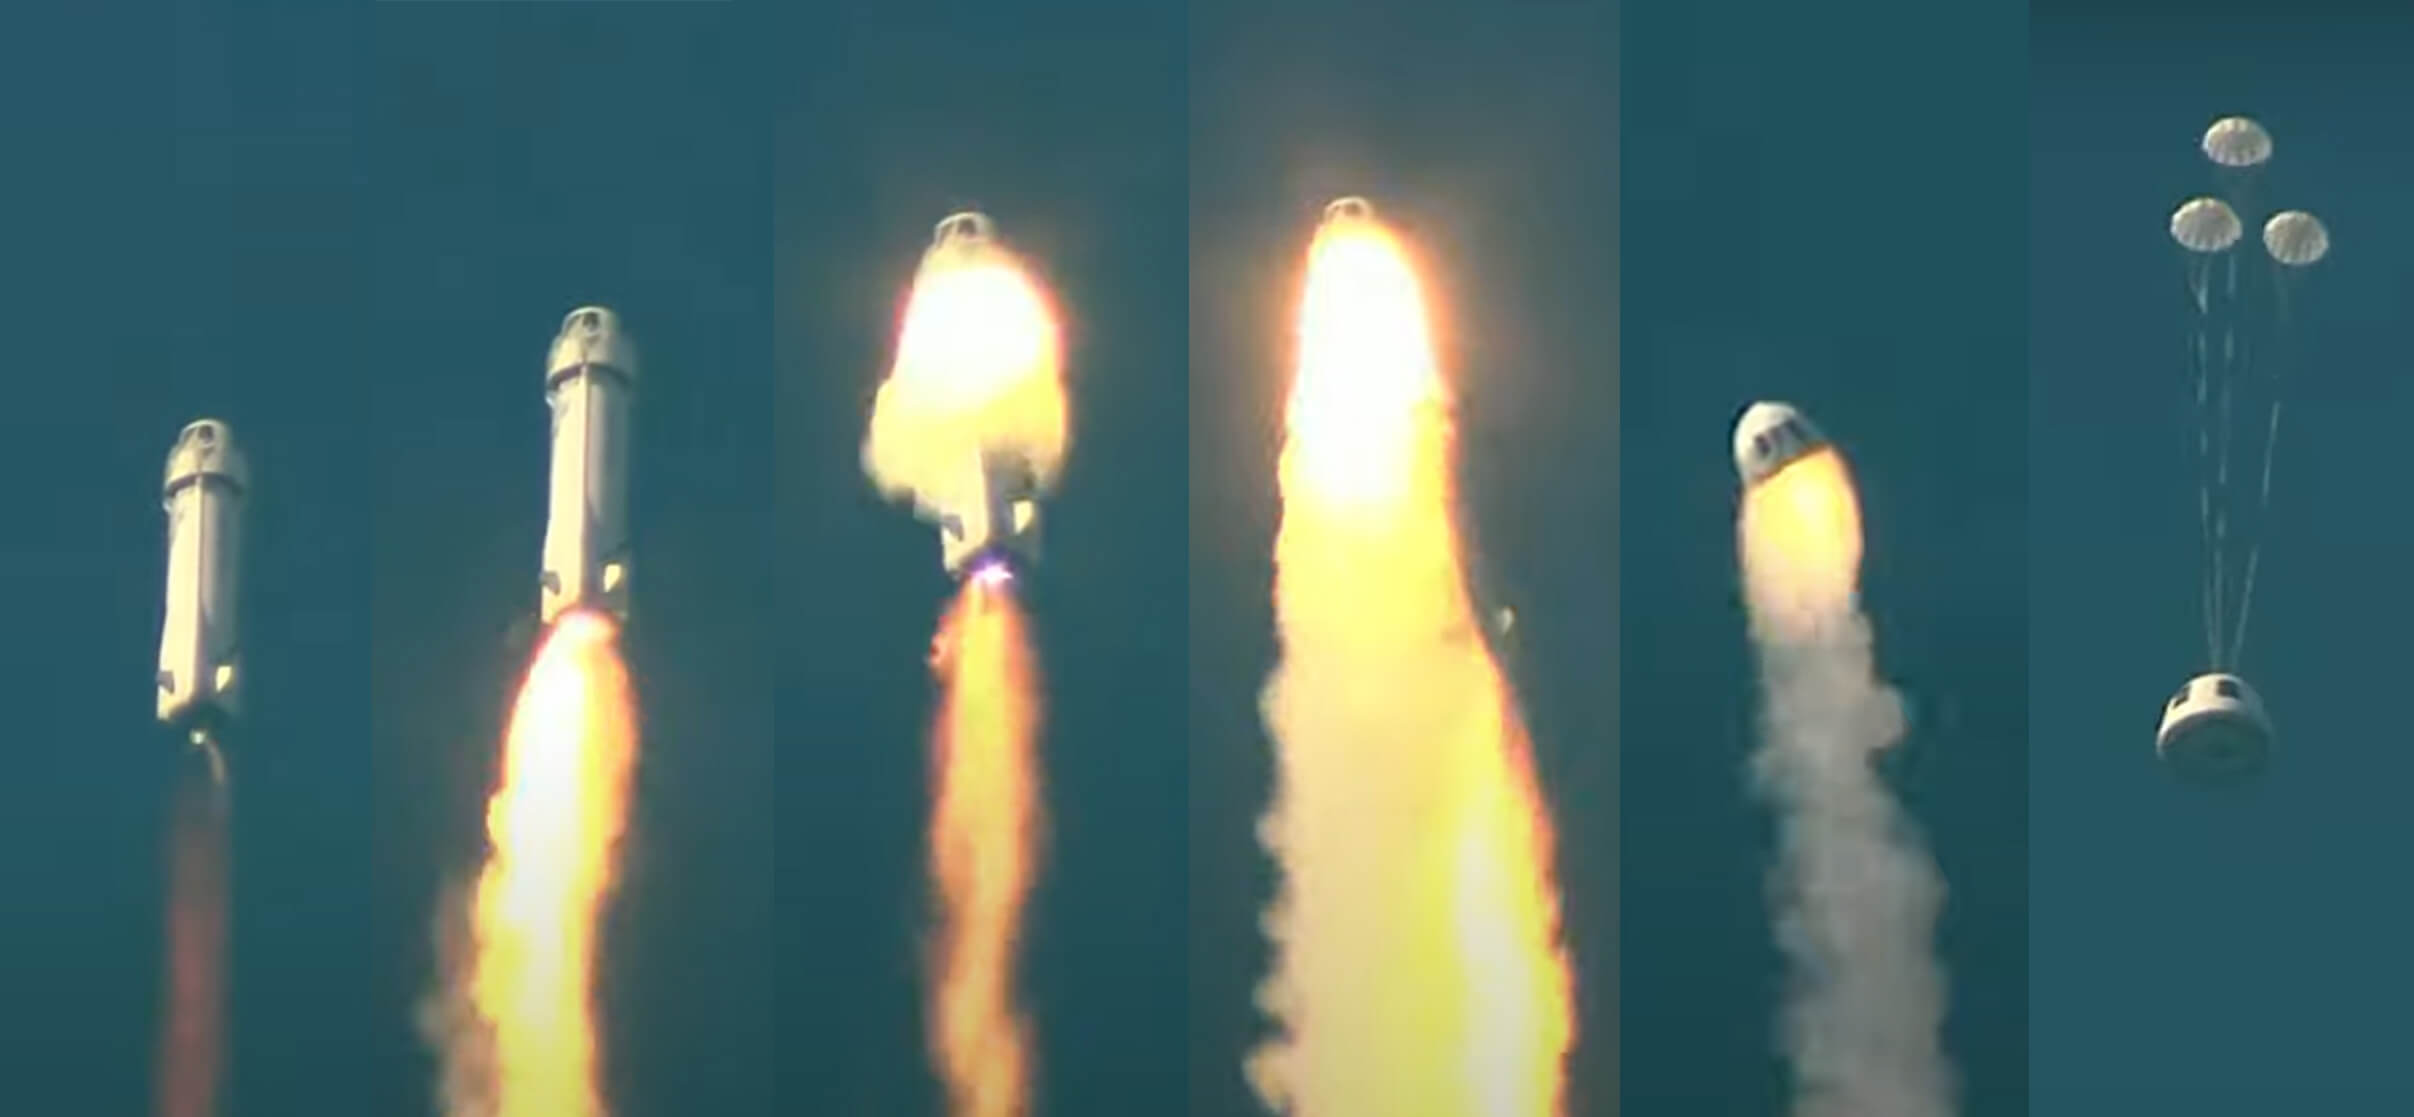 Der Start der Blue Origin-Rakete schlägt fehl, nachdem der Motor Feuer gefangen hat